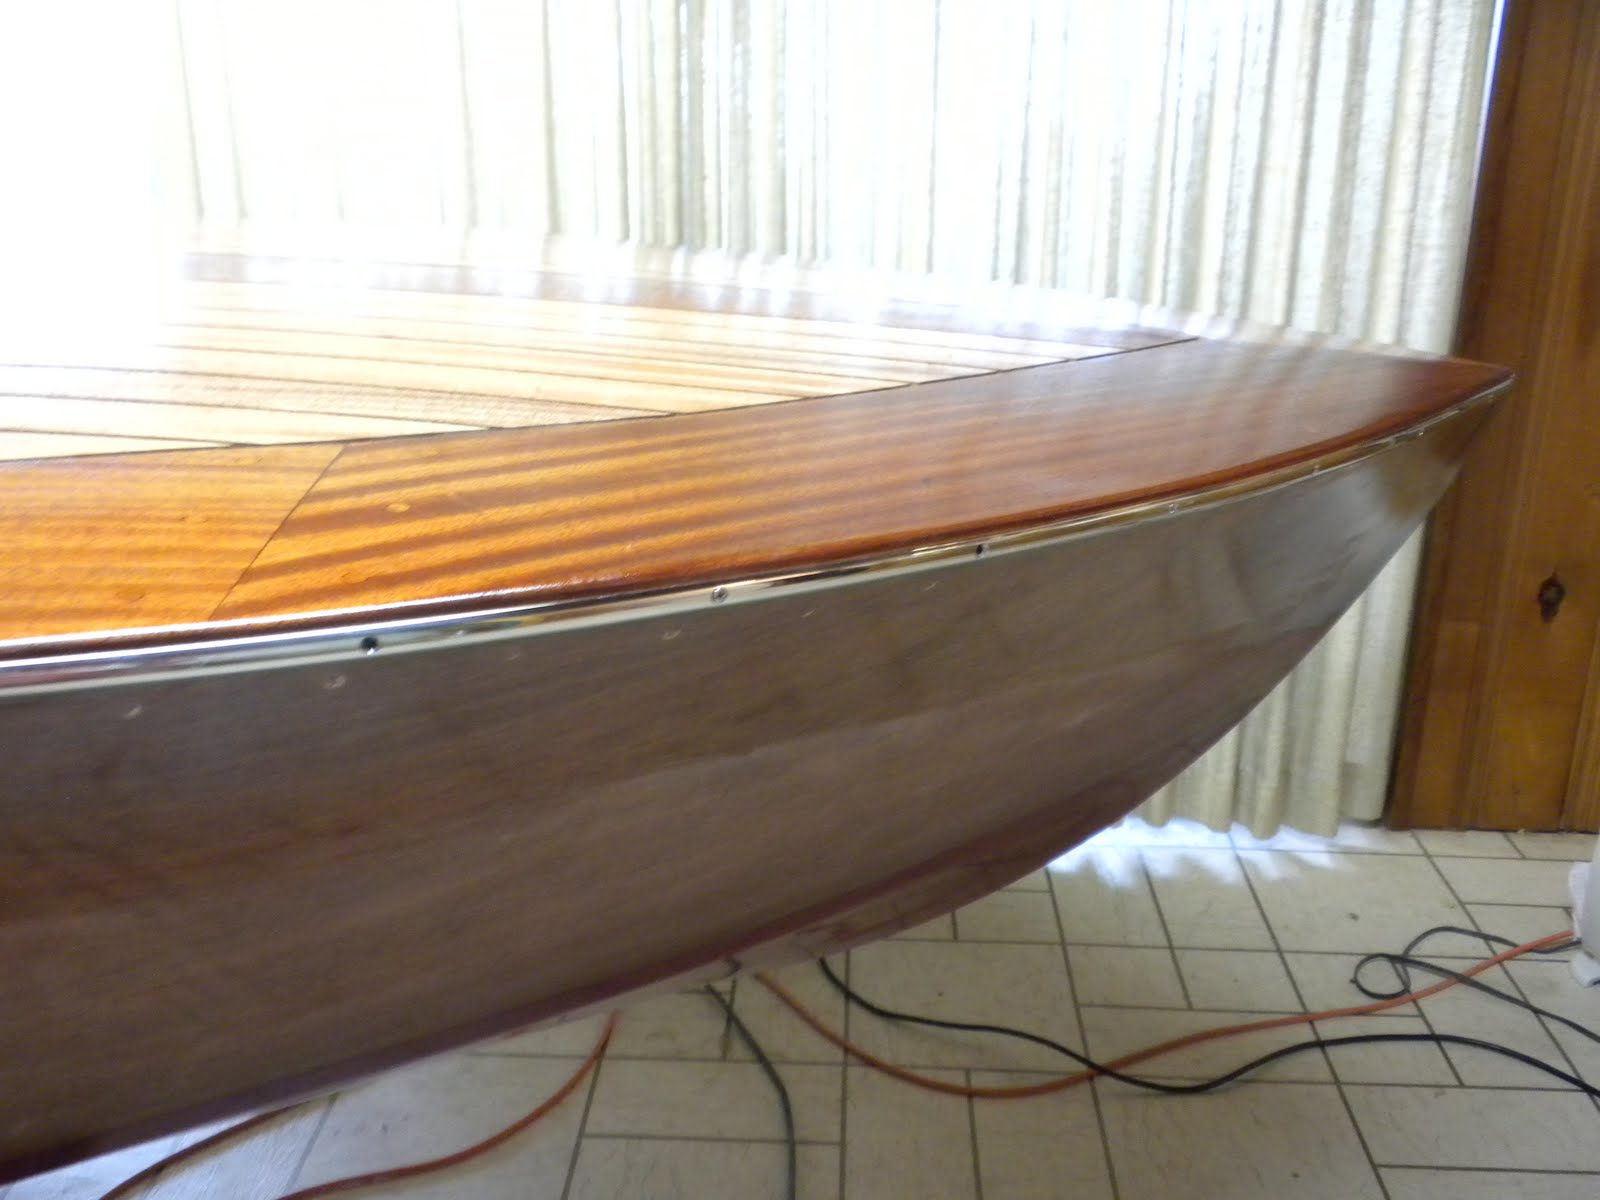 wood boat epoxy coating